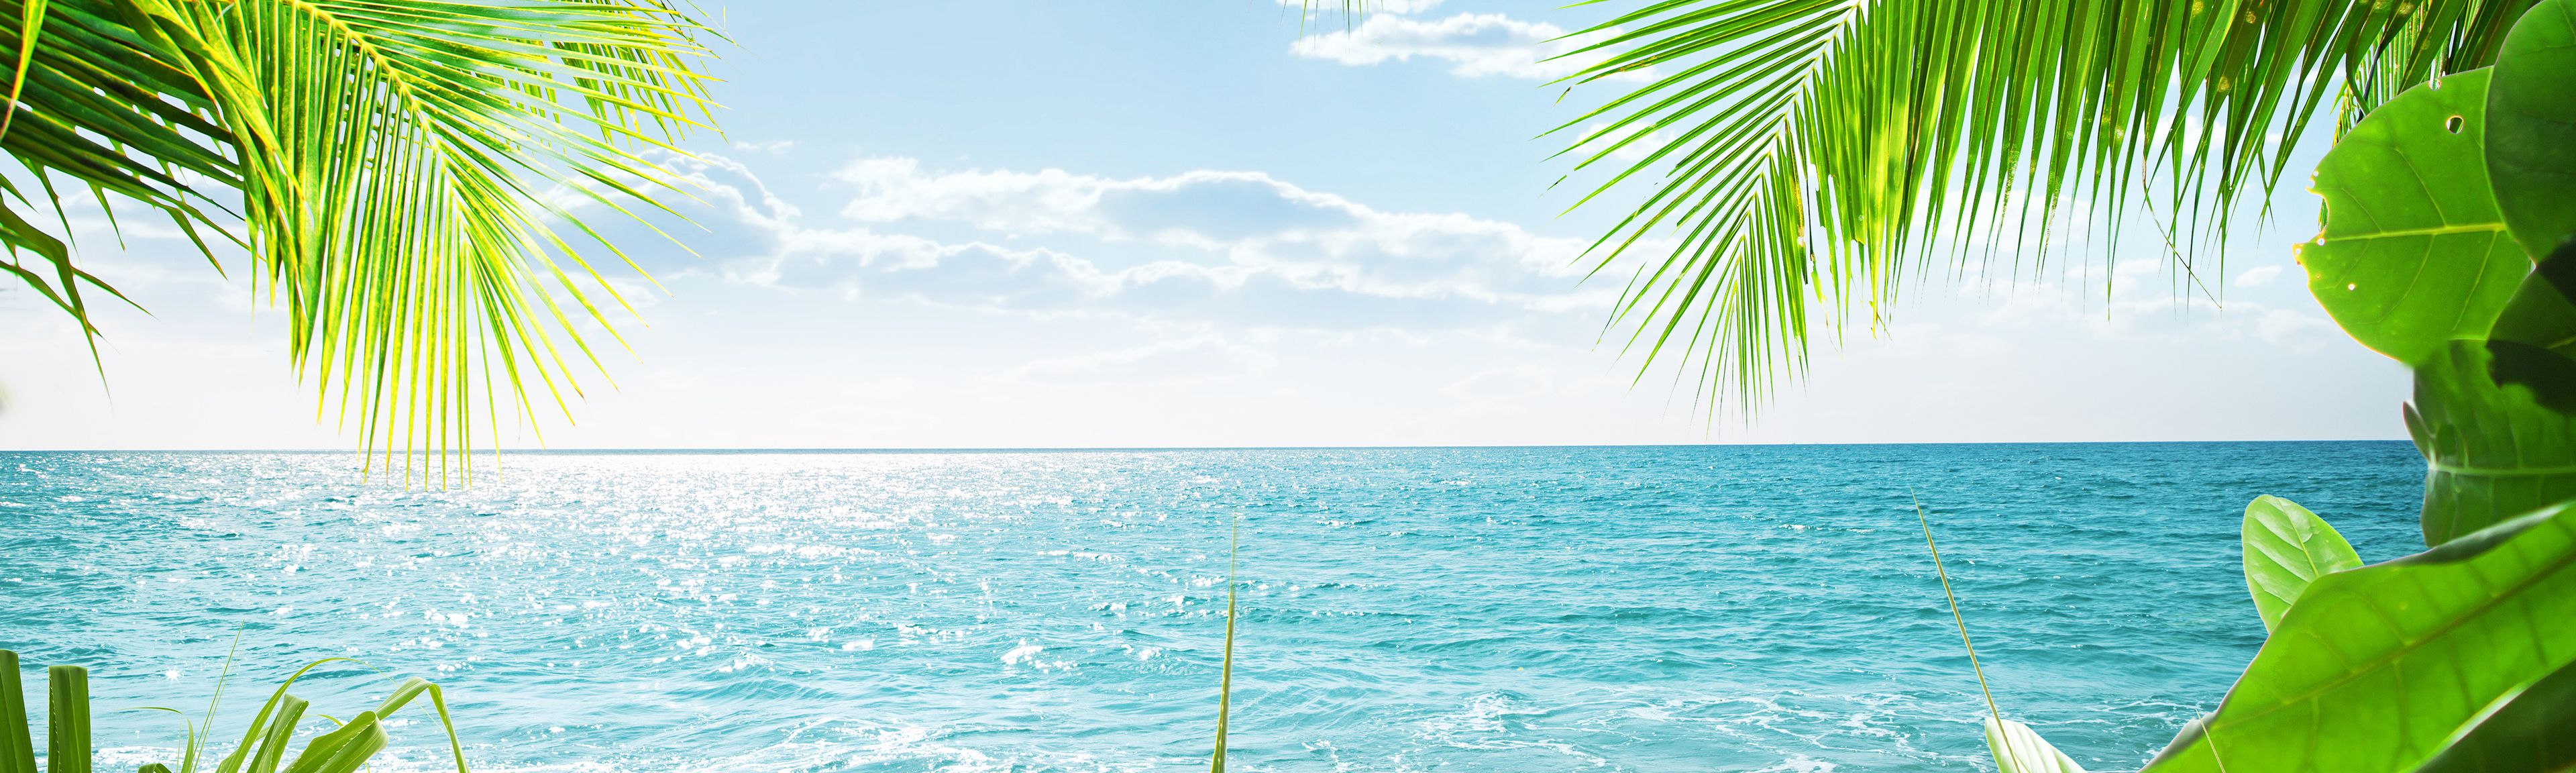 Playa paradisíaca de palmeras con el mar de fondo